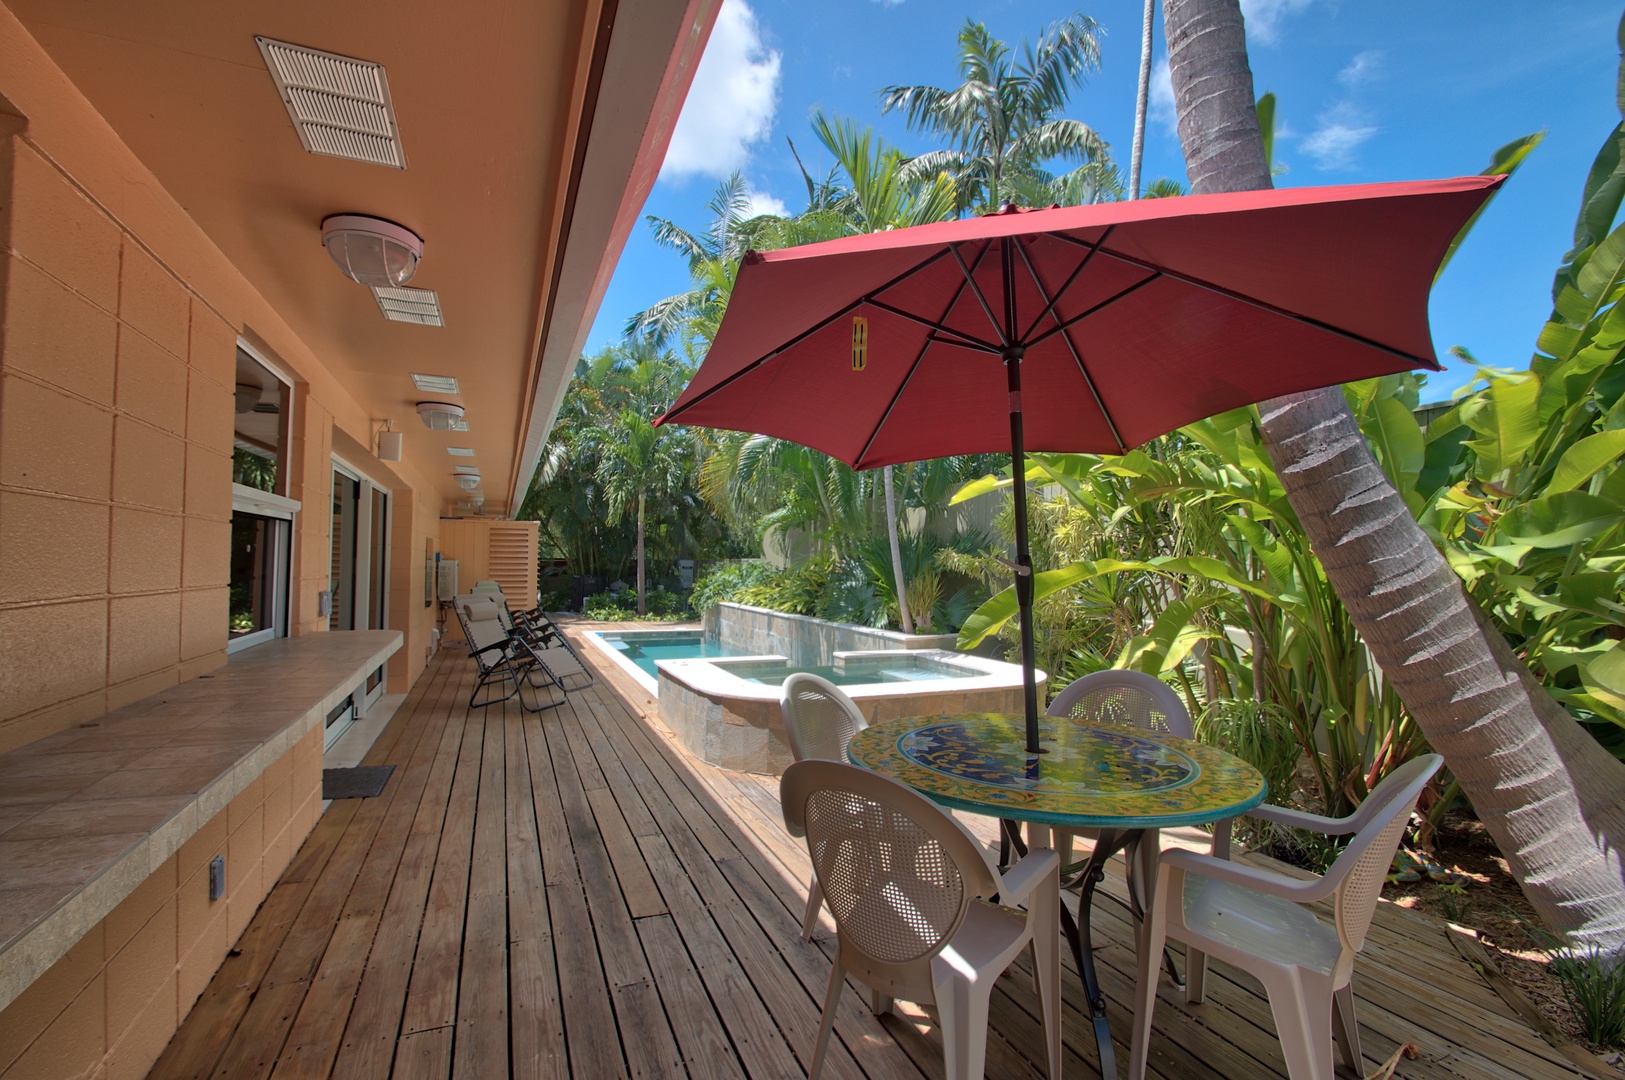 Private Deck, Jacuzzi and Pool Villa de Palmas Key West